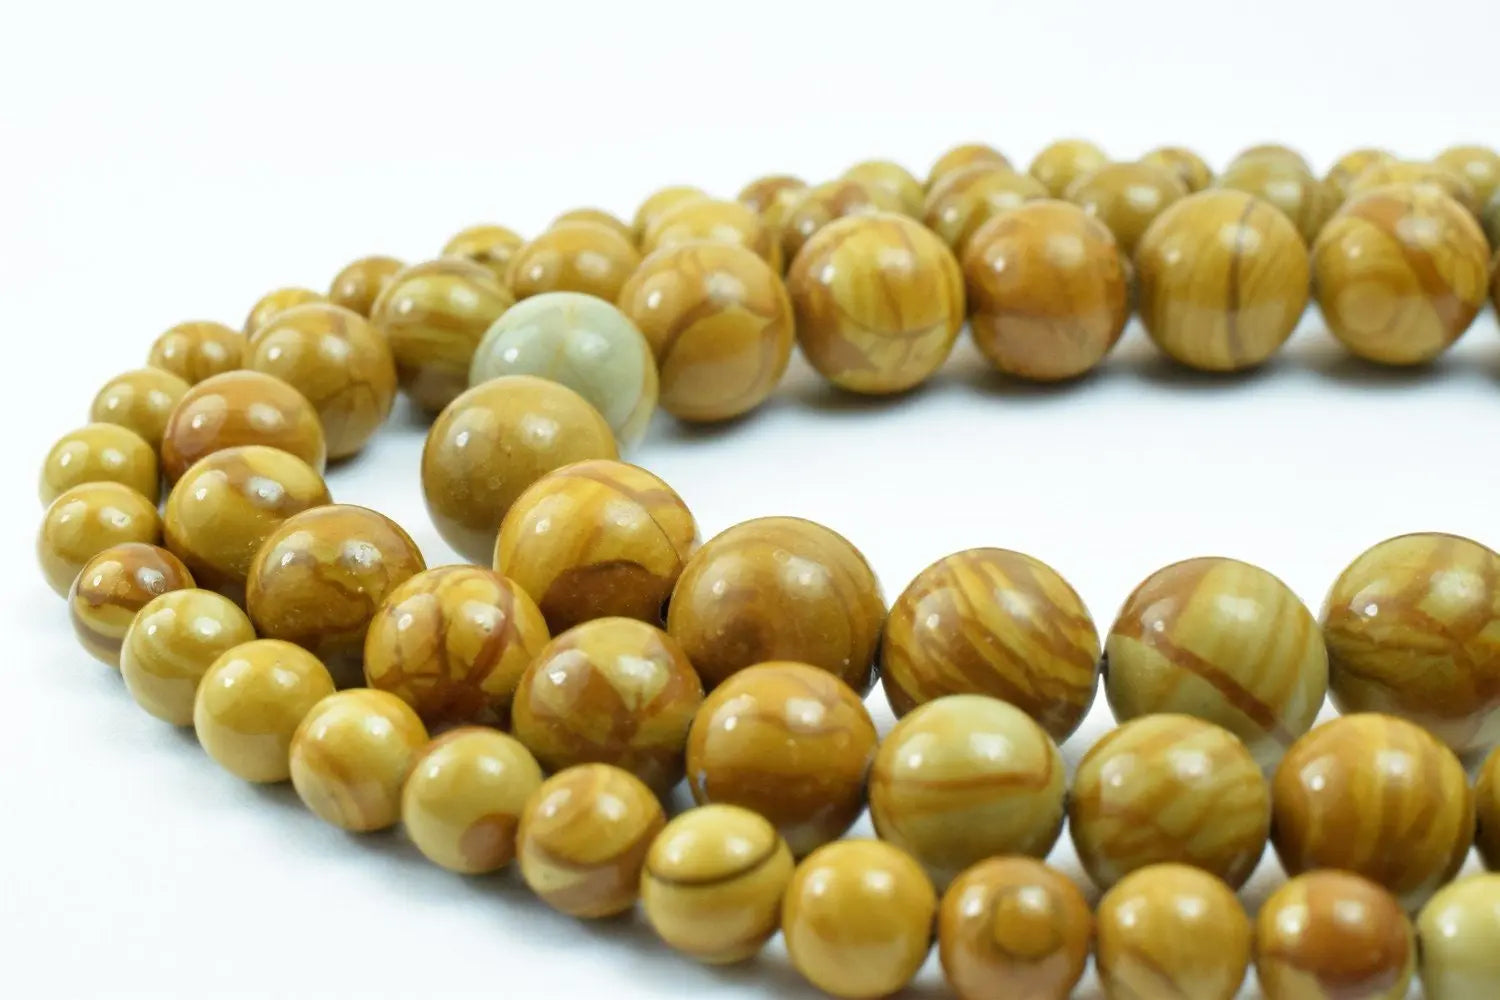 Yellow Tiger Skin Beads Wooden Jasper Gemstone Round Beads 6mm/8mm/10mm Natural Stones Beads natural healing stone chakra stones - BeadsFindingDepot